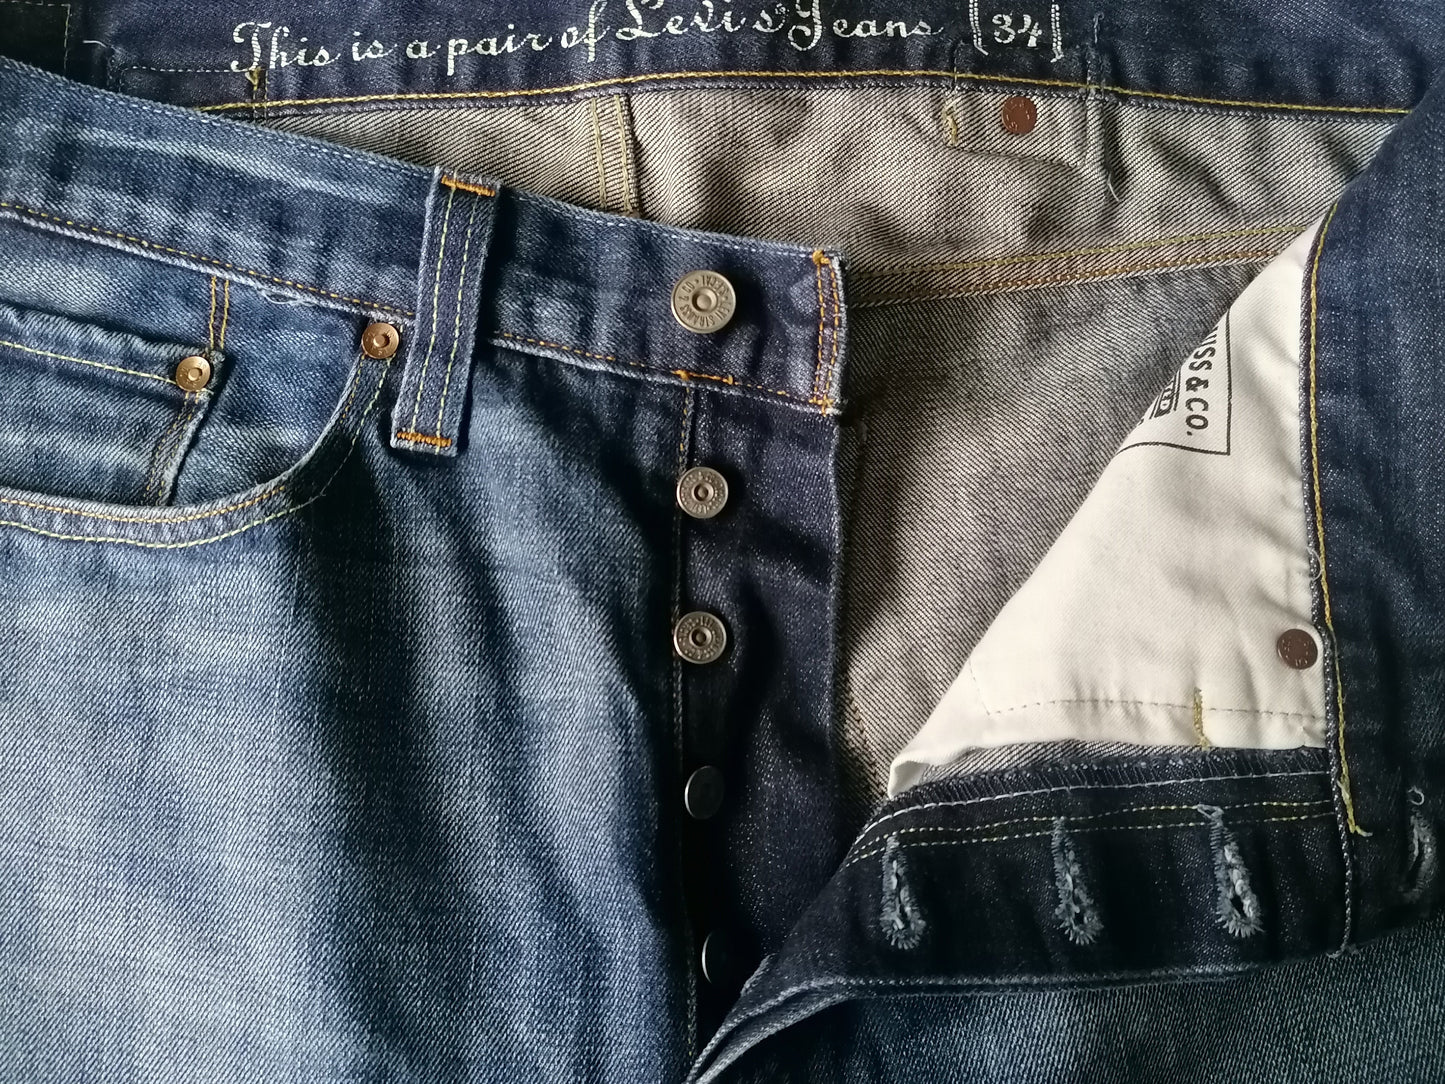 I jeans di Levi. Colorato blu. W34 - L28.